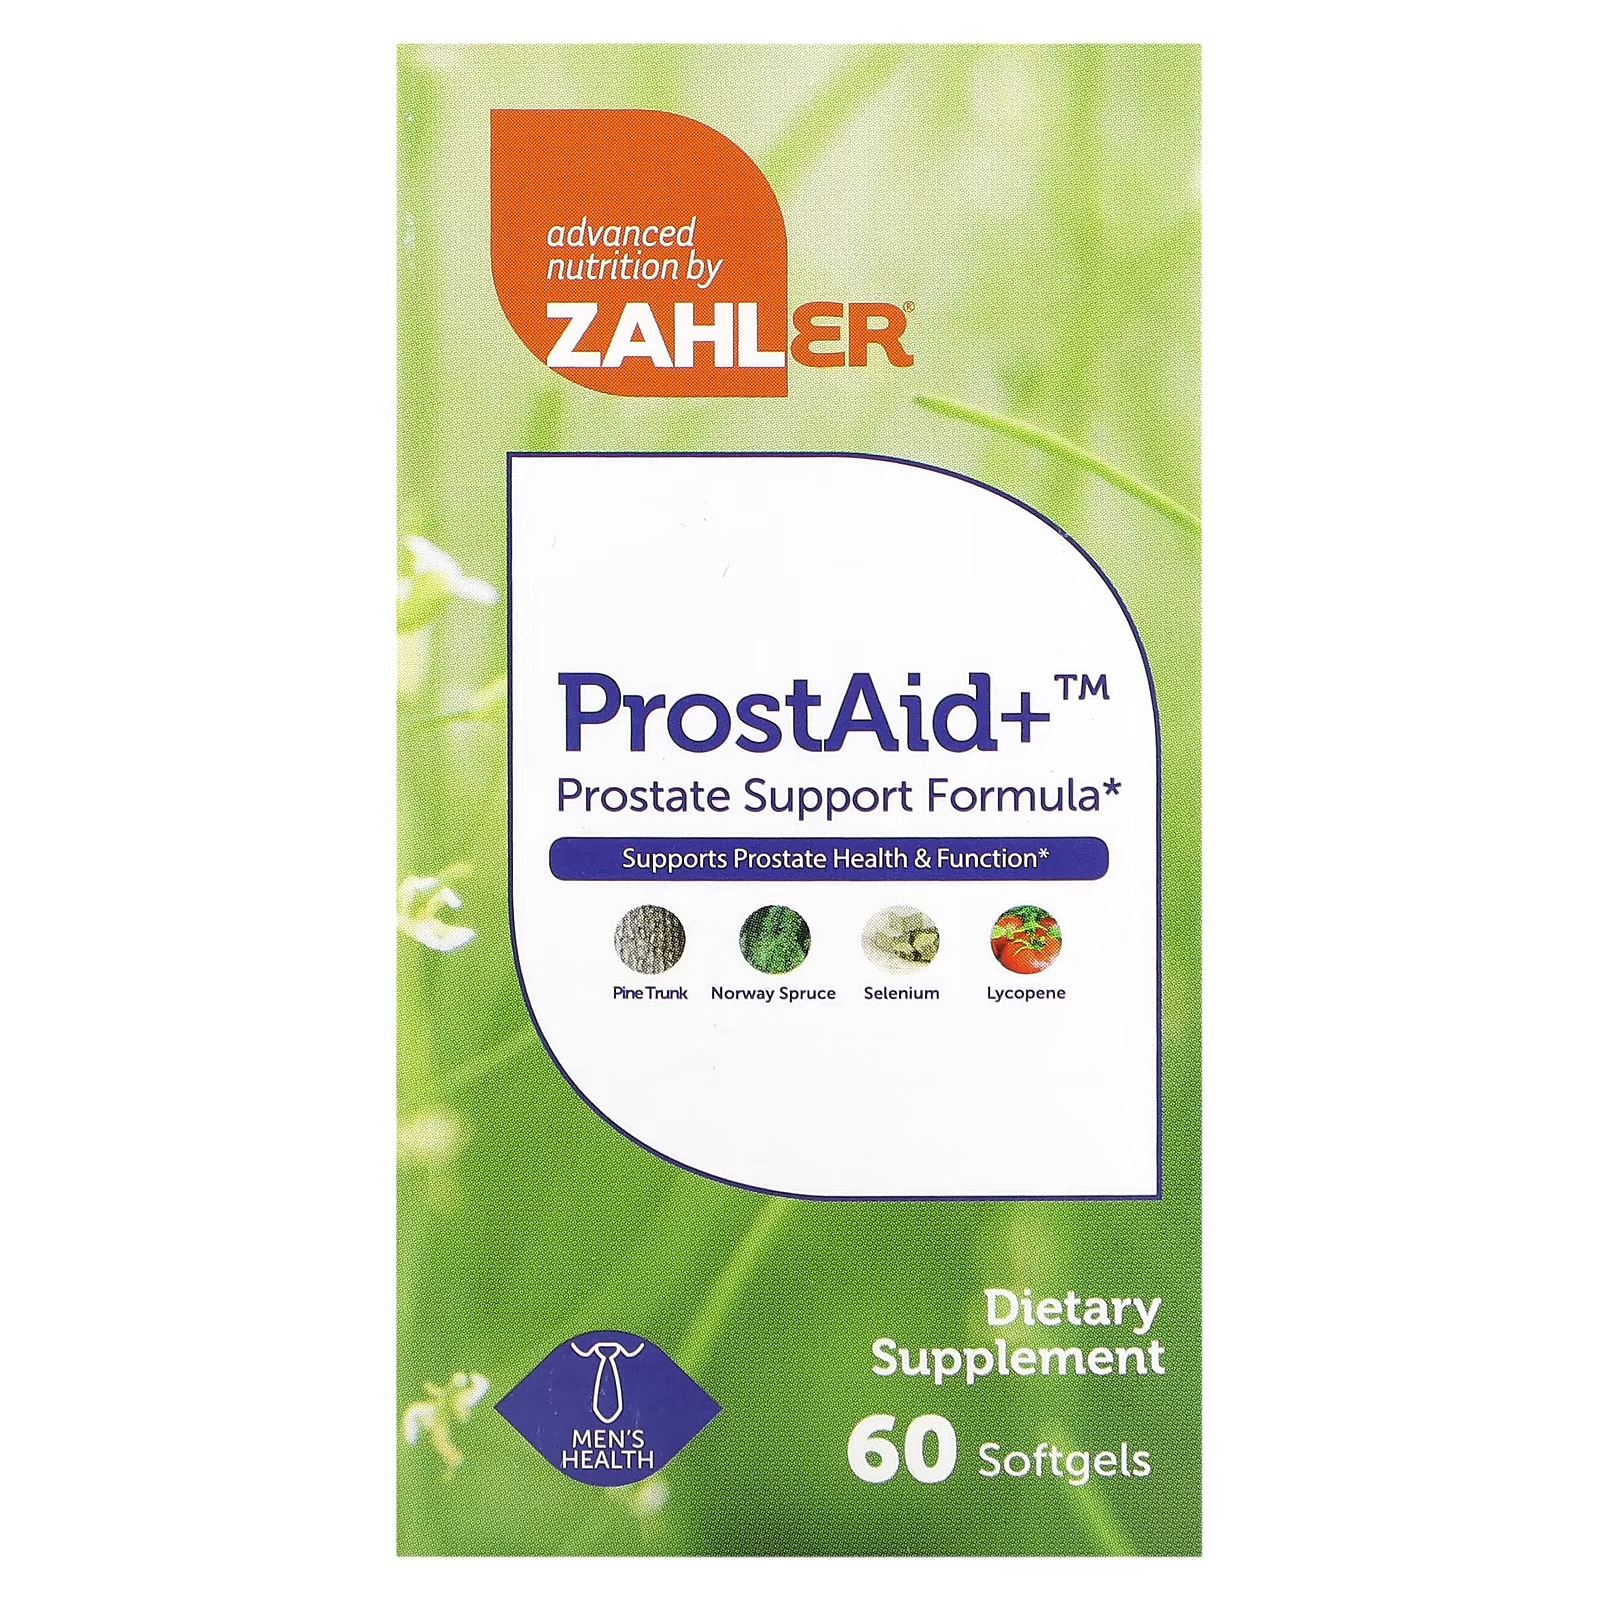 Пищевая добавка Zahler ProstAid+ Prostate Support Formula, 60 таблеток биодобавка простата плюс prostate support 60 таблеток